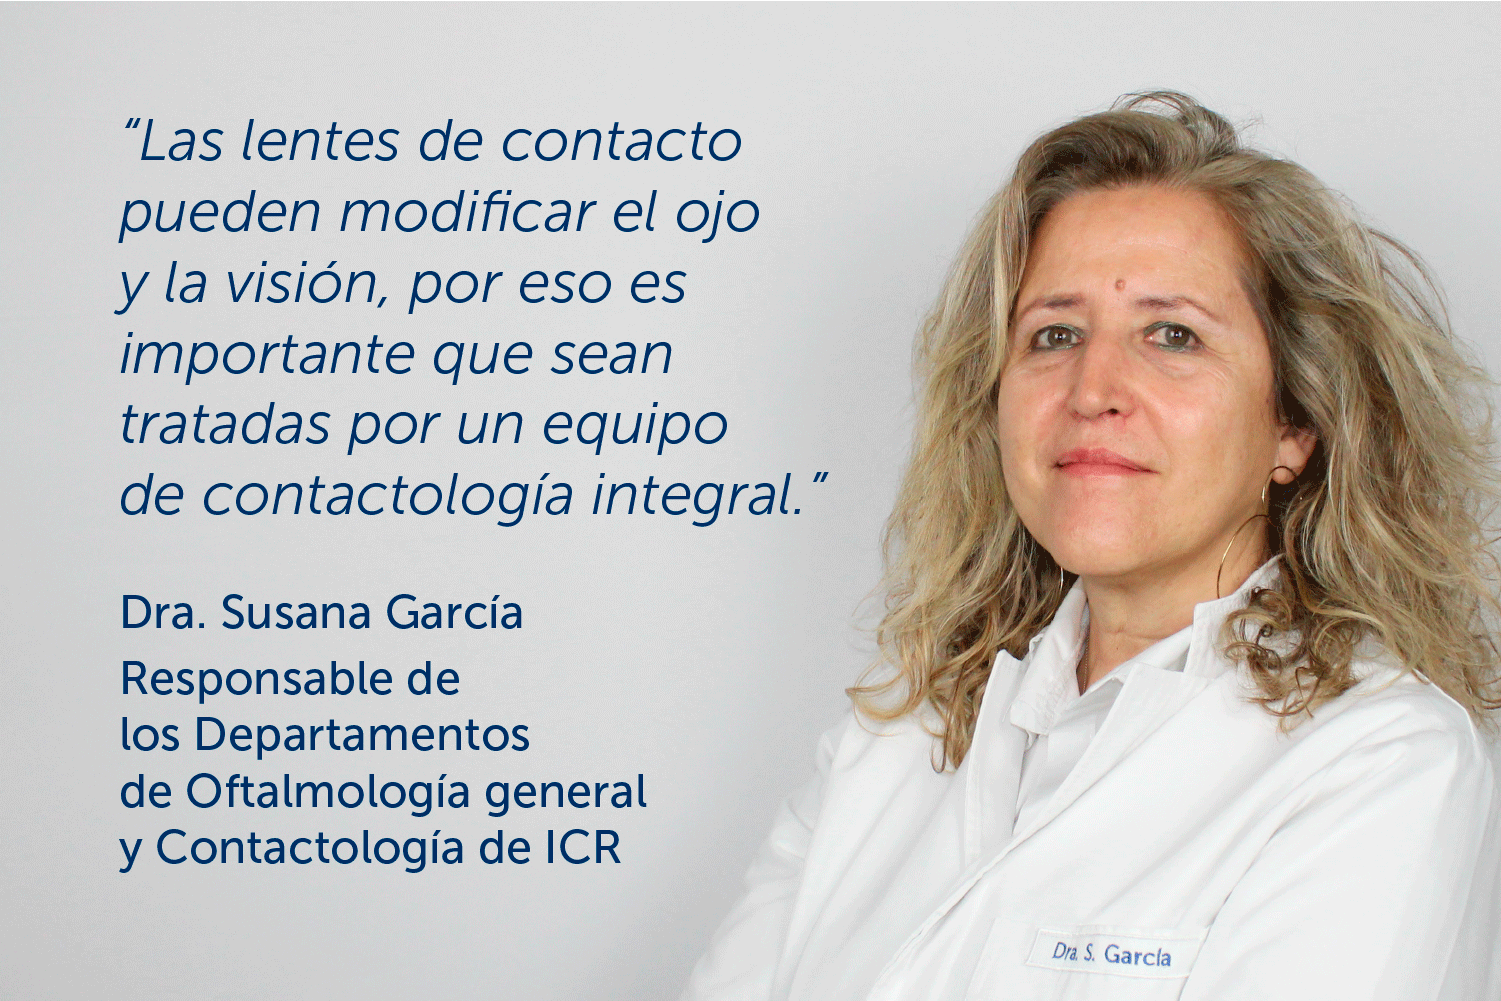 «Es importante que las lentes de contacto sean tratadas por un equipo de contactología integral» – Entrevista a la Dra. García